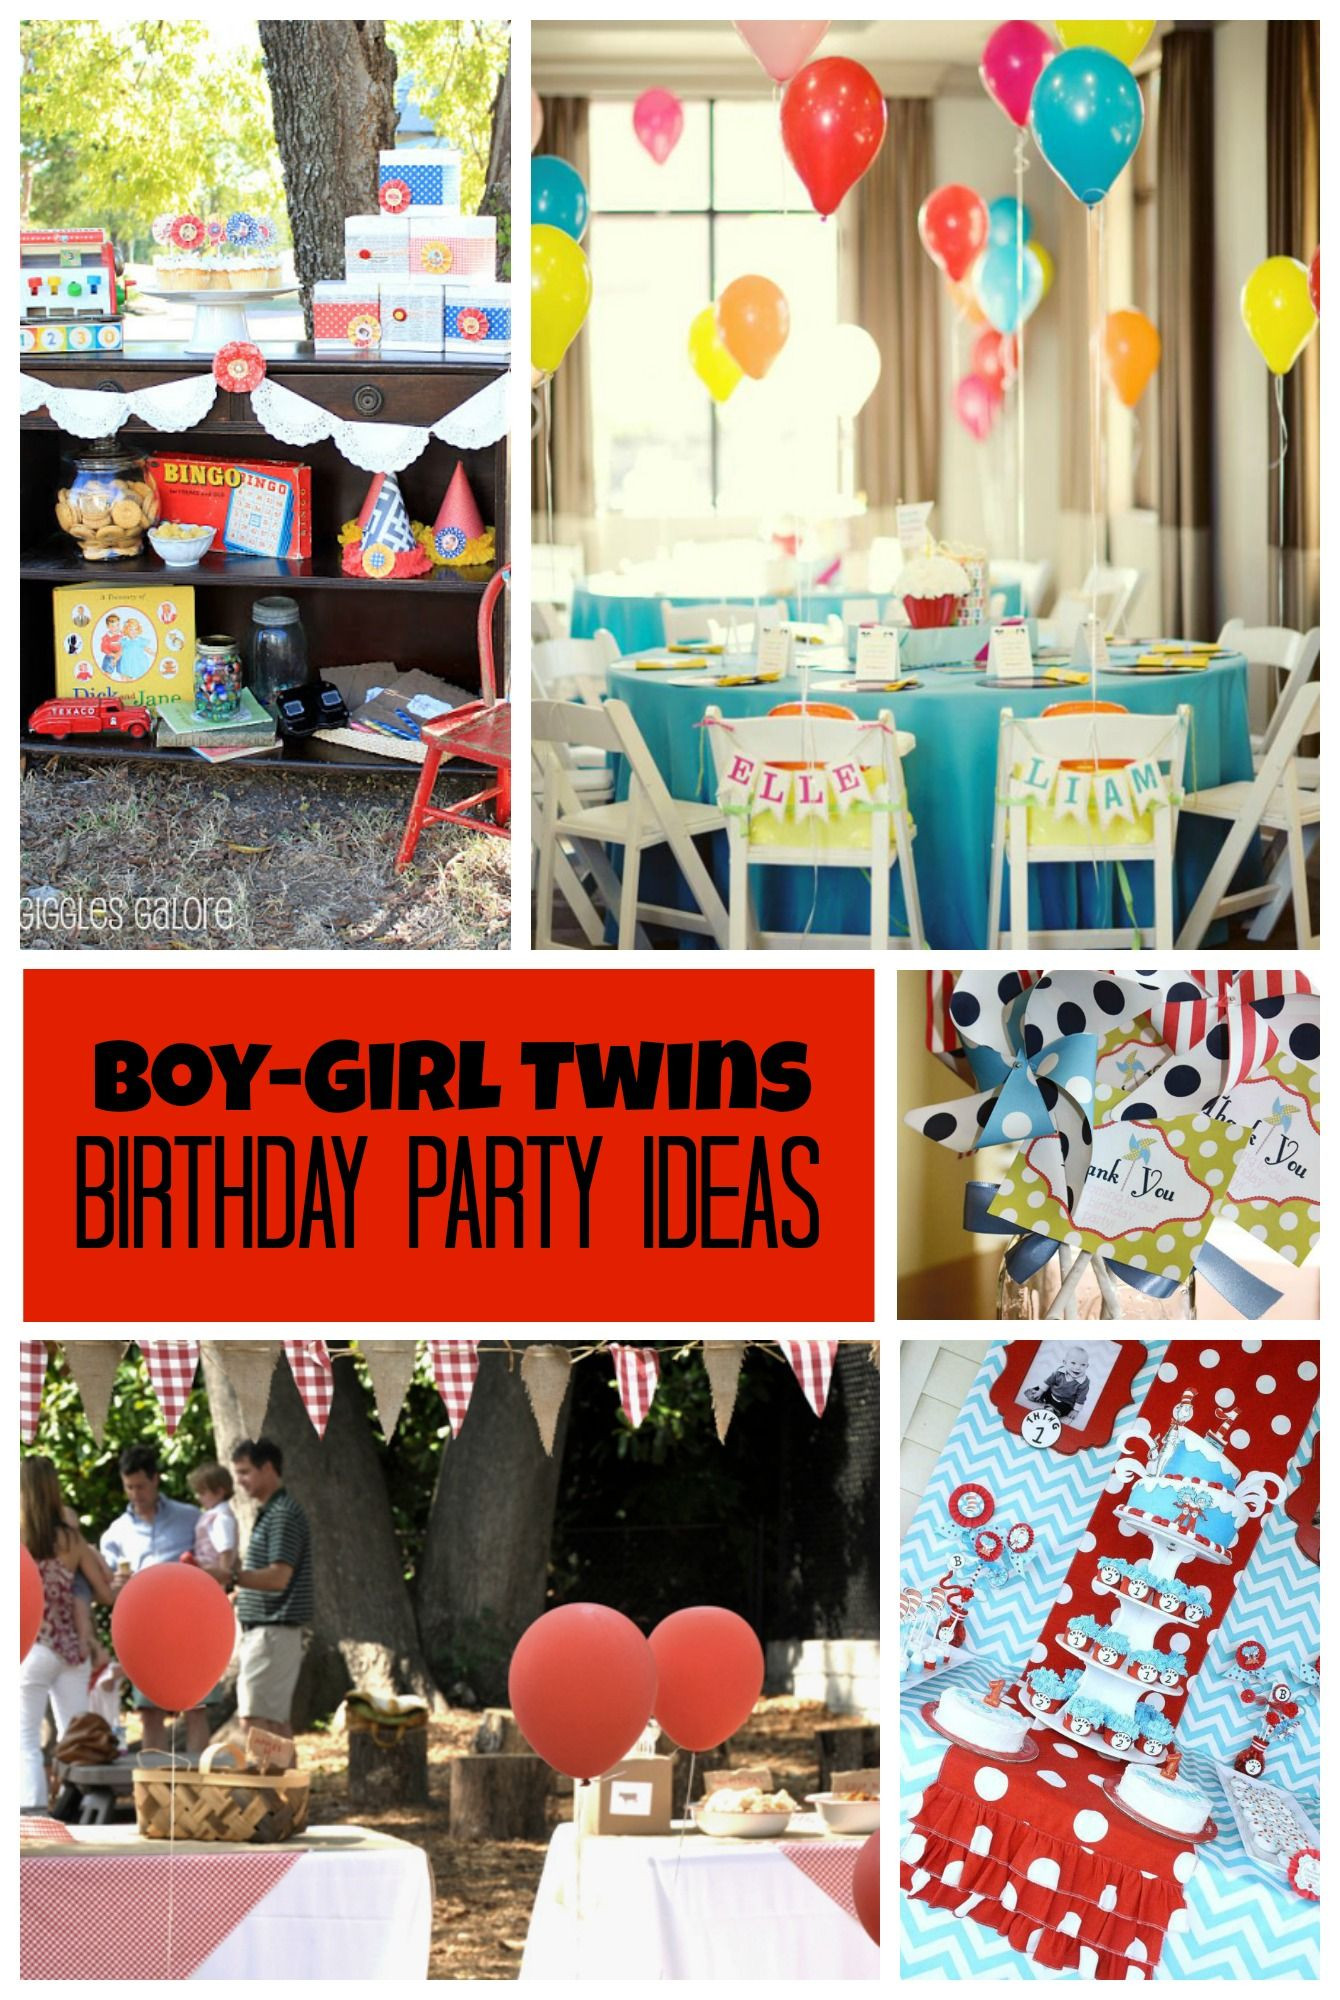 Boy Girl Birthday Party Ideas
 Birthday Party Ideas for Boy Girl Twins